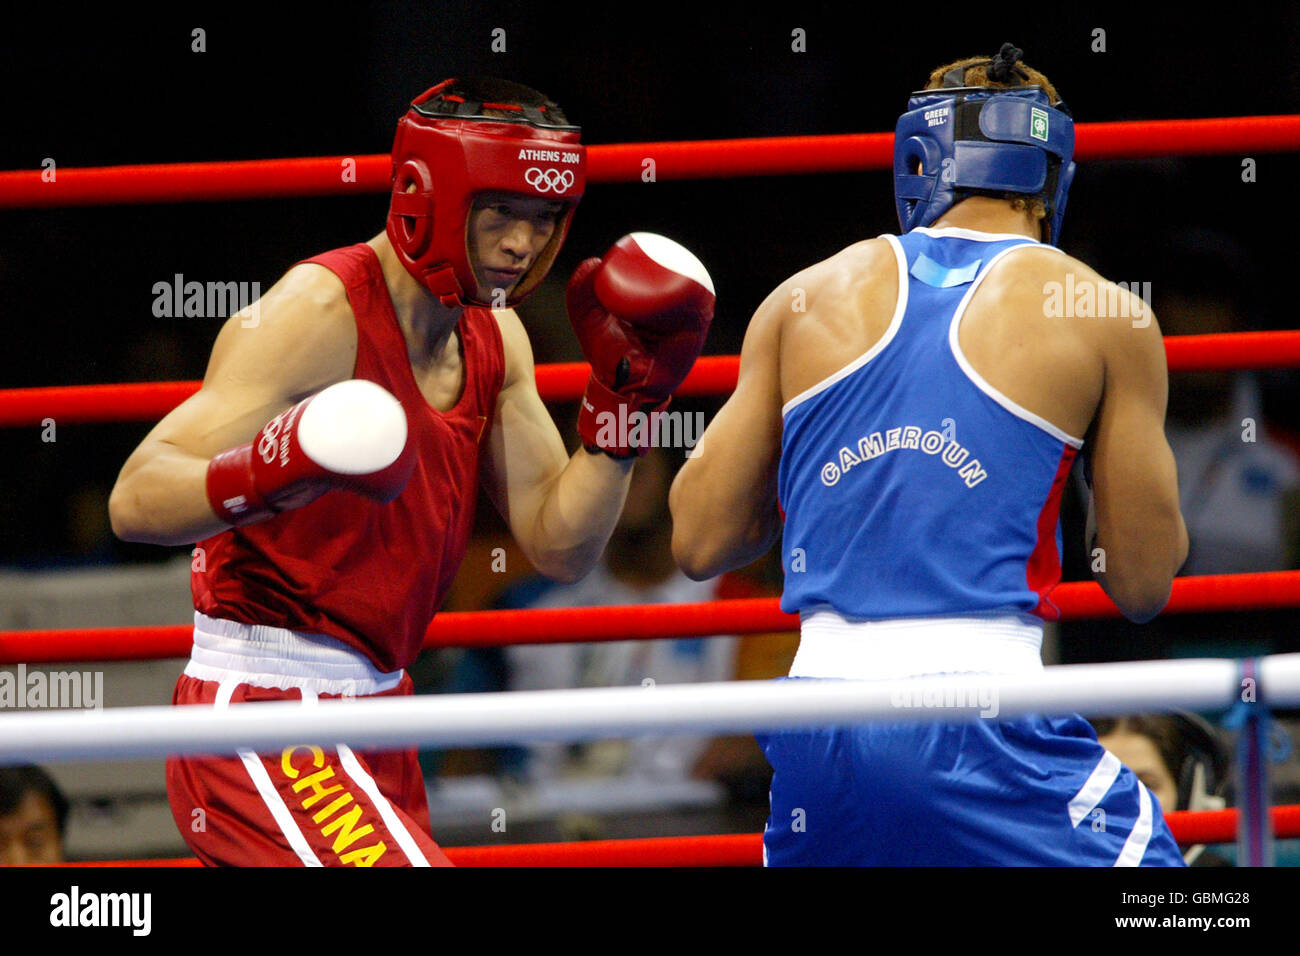 Boxe - Jeux Olympiques d'Athènes 2004 - Heavy léger pour hommes.Yuping Lei (l) de la Chine en route pour battre Pierre Celestin Yana (r) de Camaroon Banque D'Images